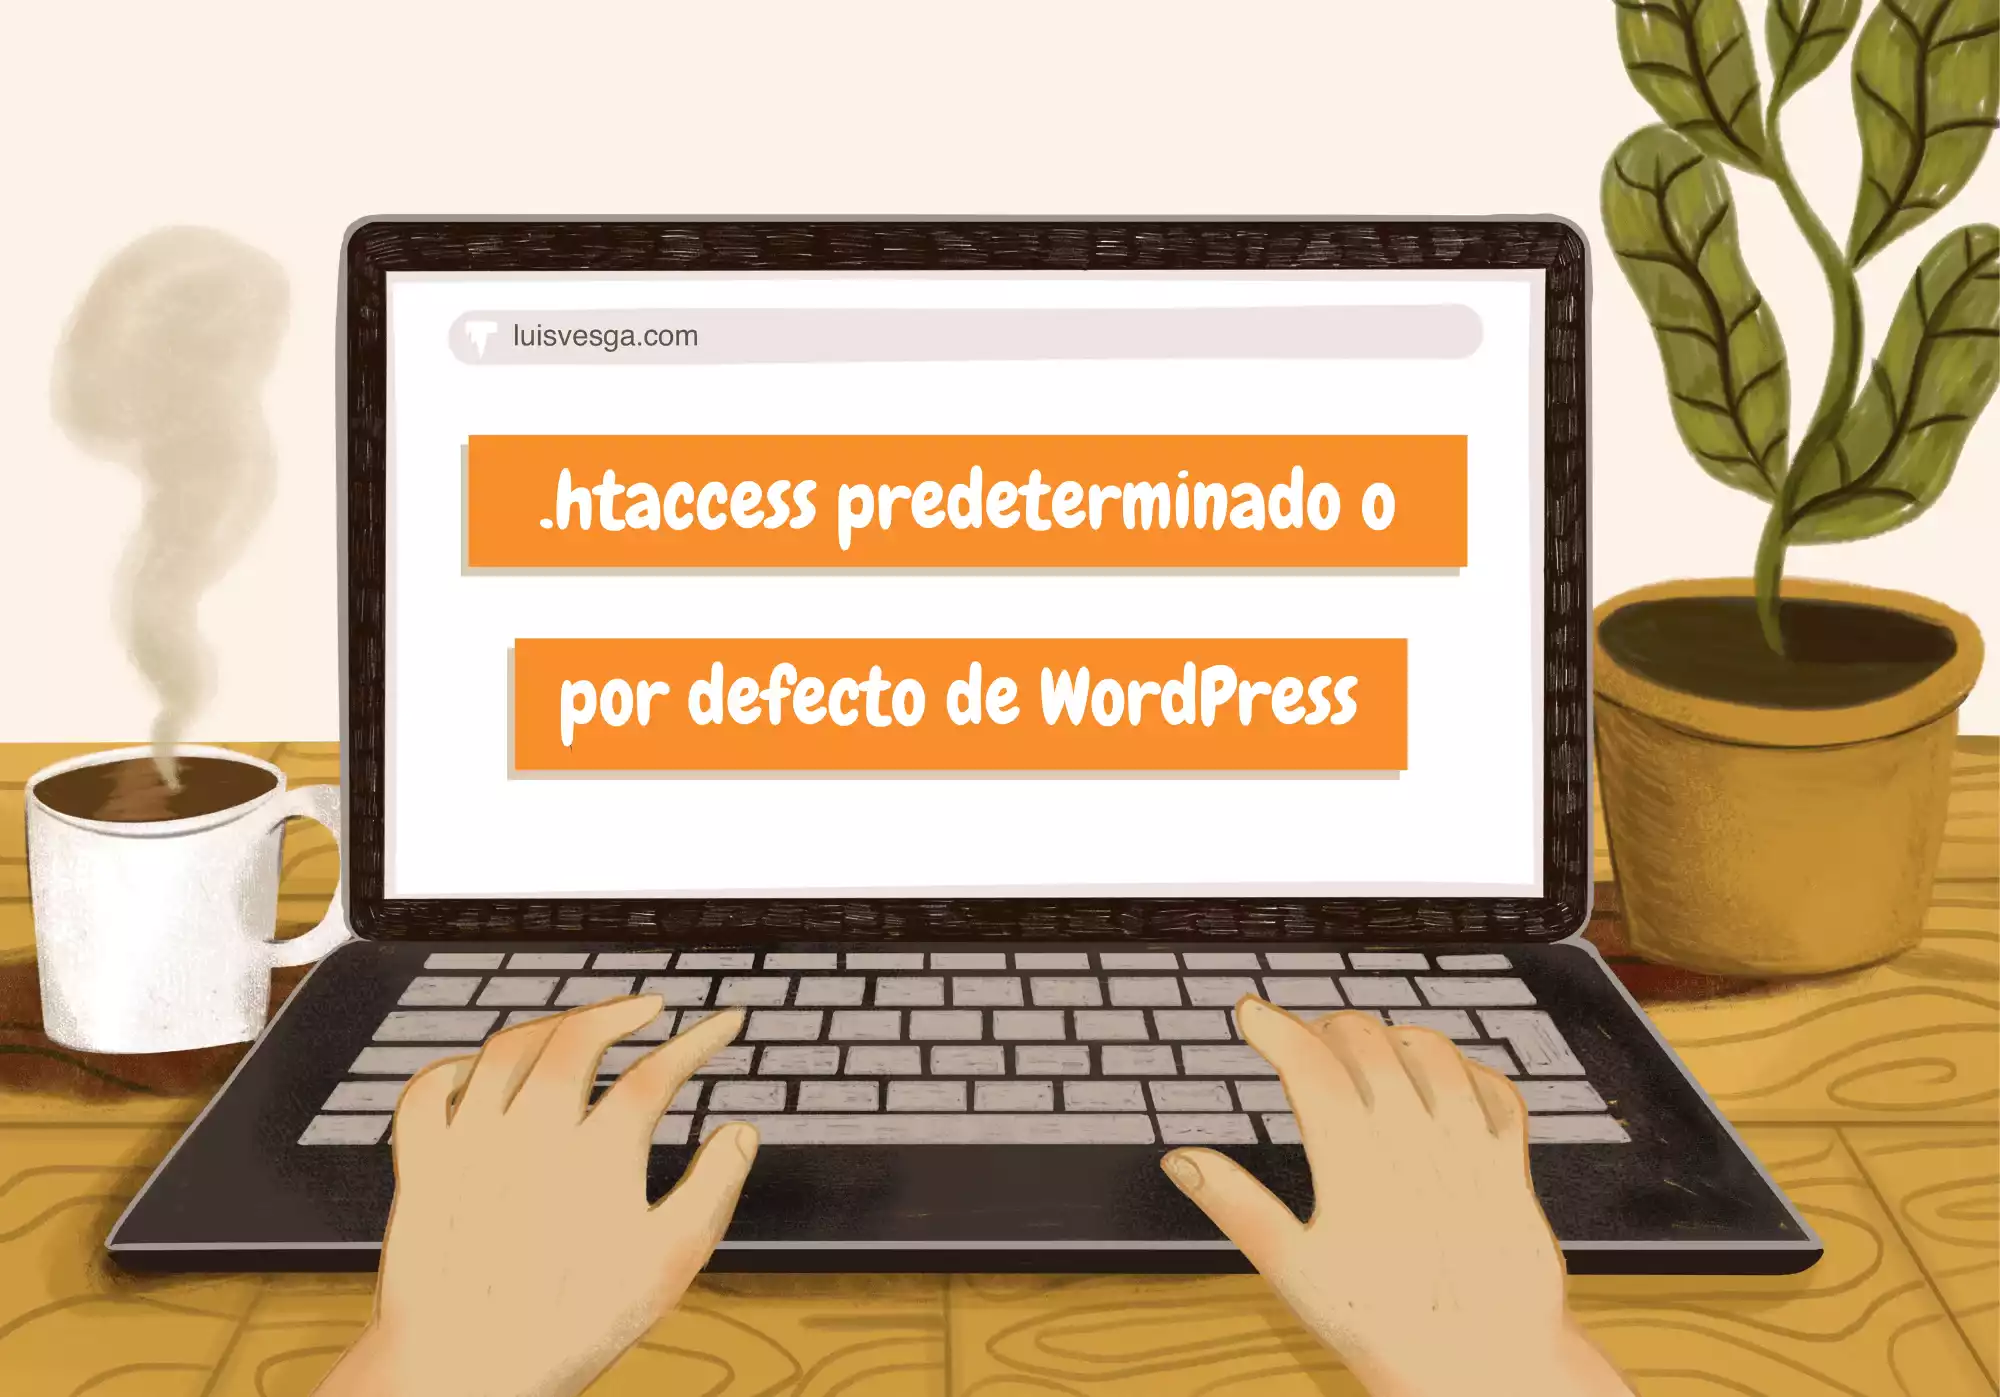 .htaccess predeterminado o por defecto de WordPress 📄